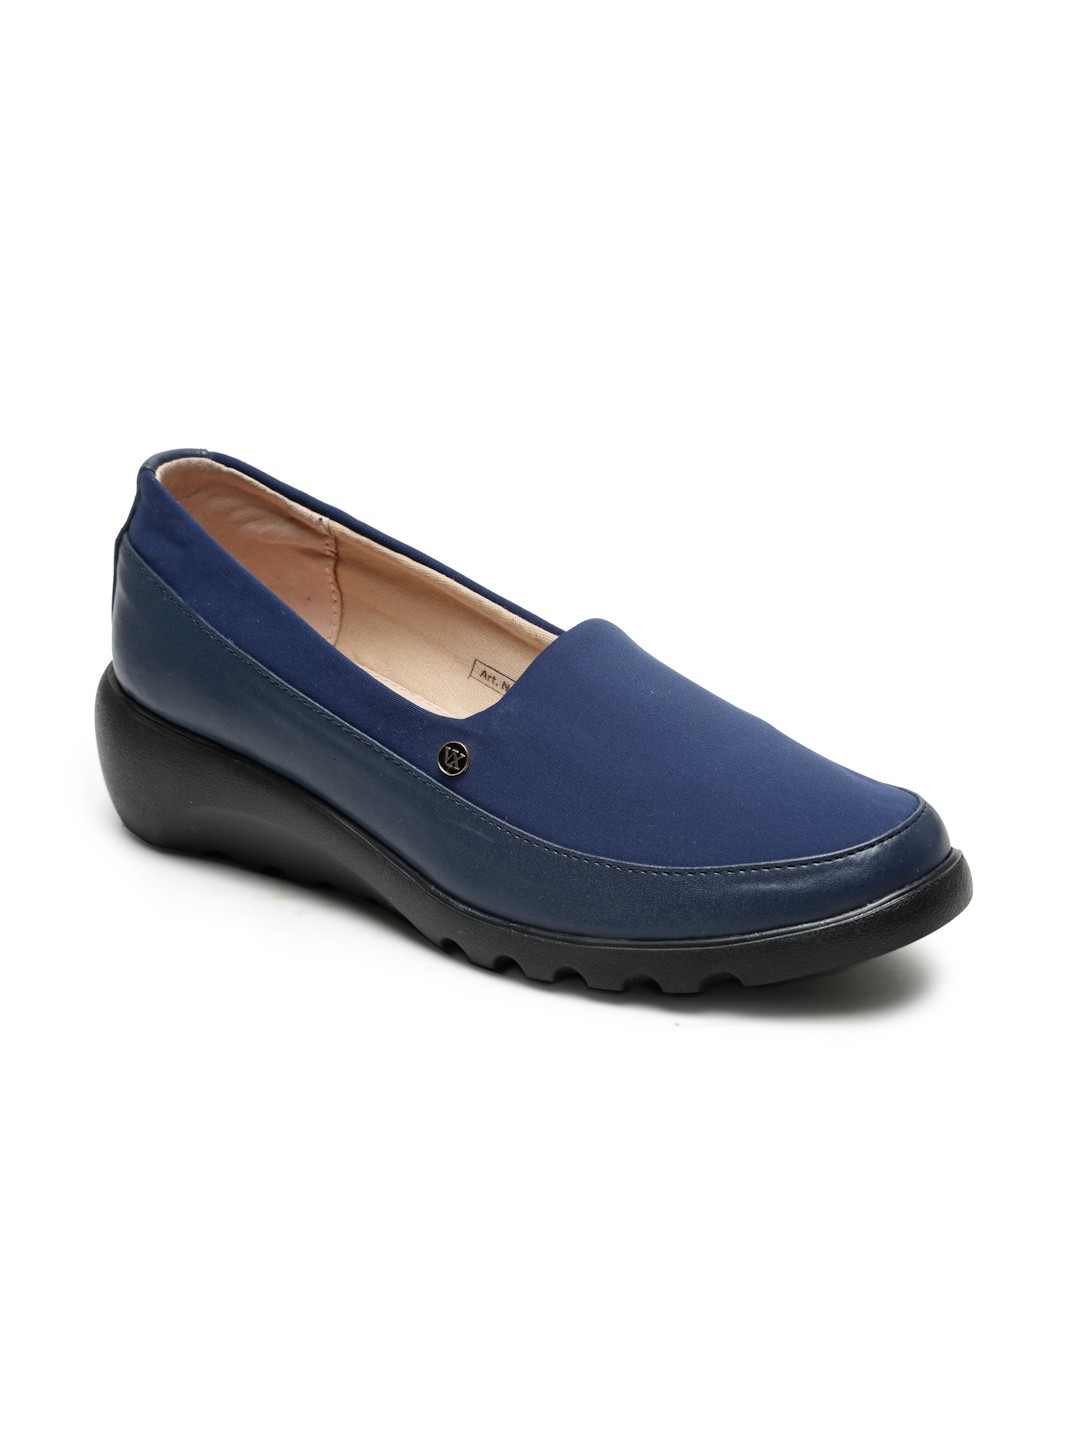 Buy Von Wellx Germany Comfort Women's Blue Casual Shoes Elsa Online in Surat